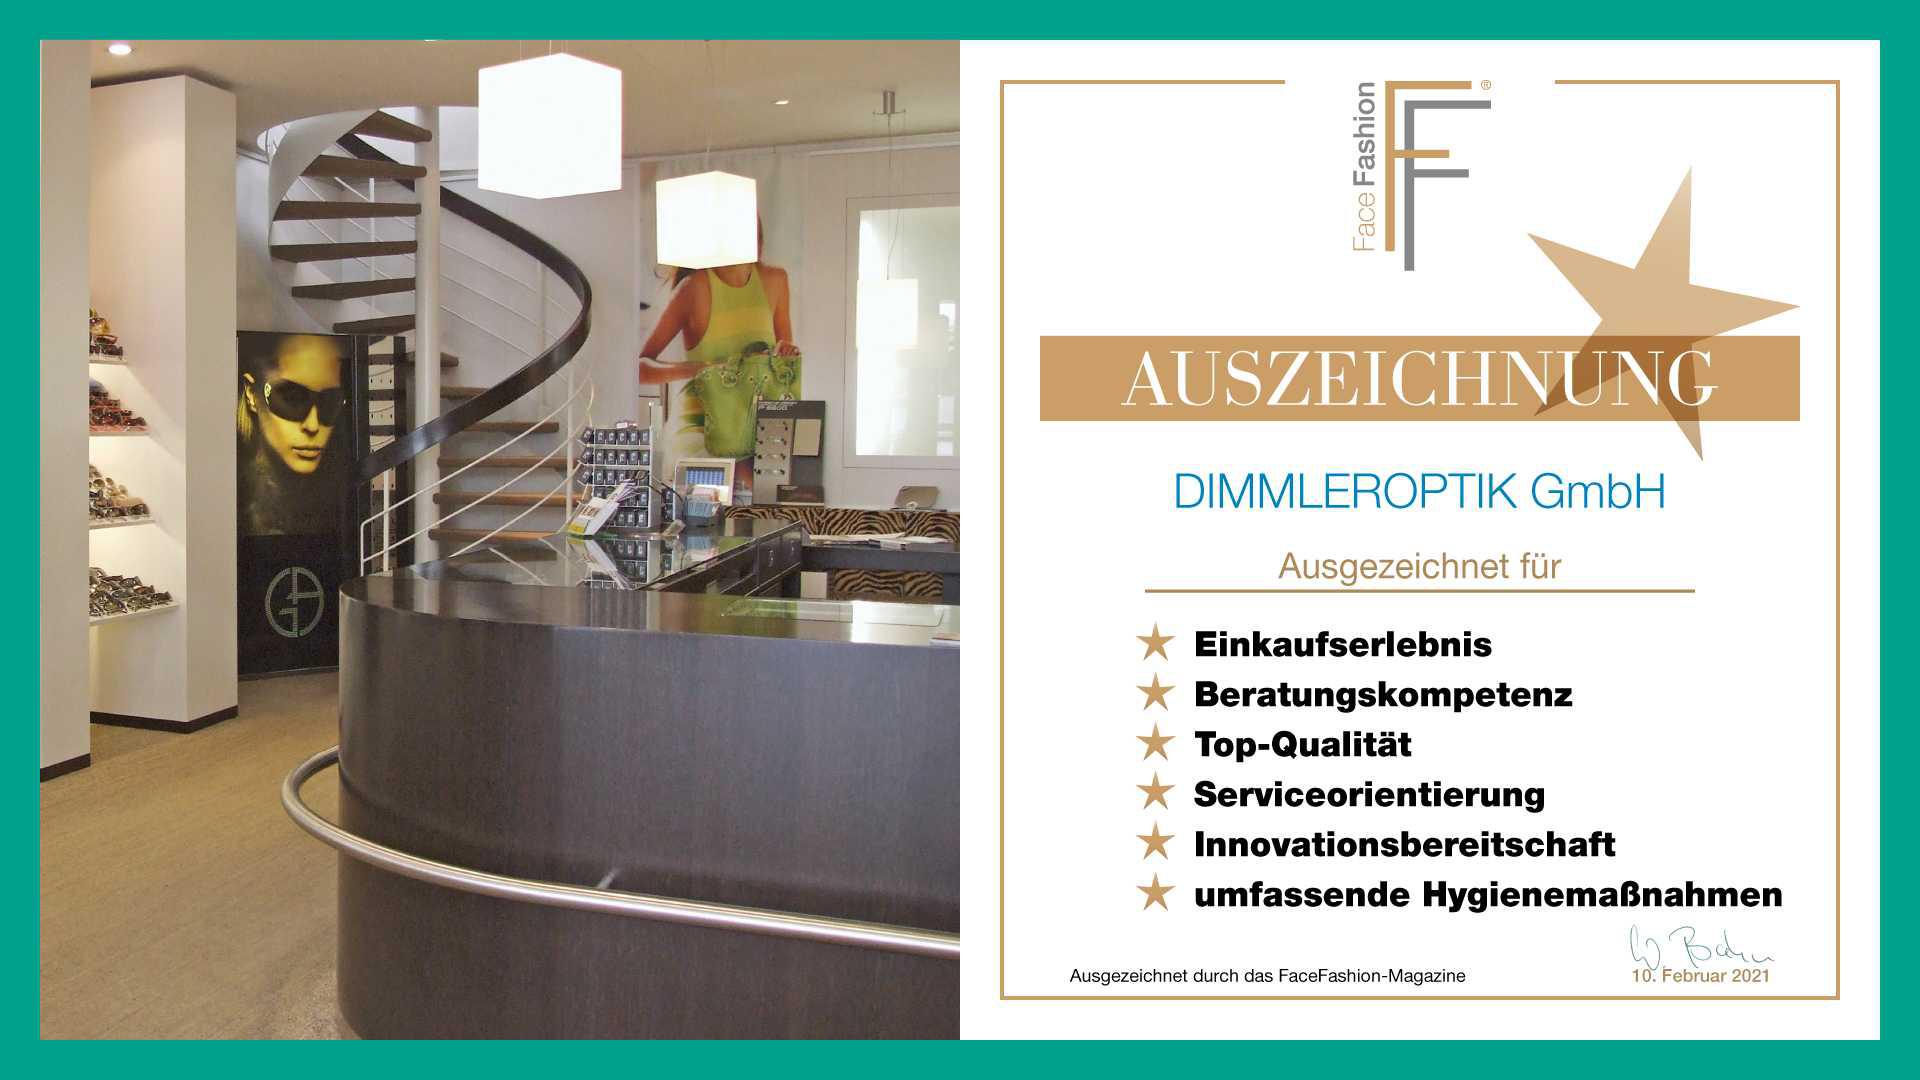 Bilder dimmleroptik GmbH Fachgeschäft für Augenoptik